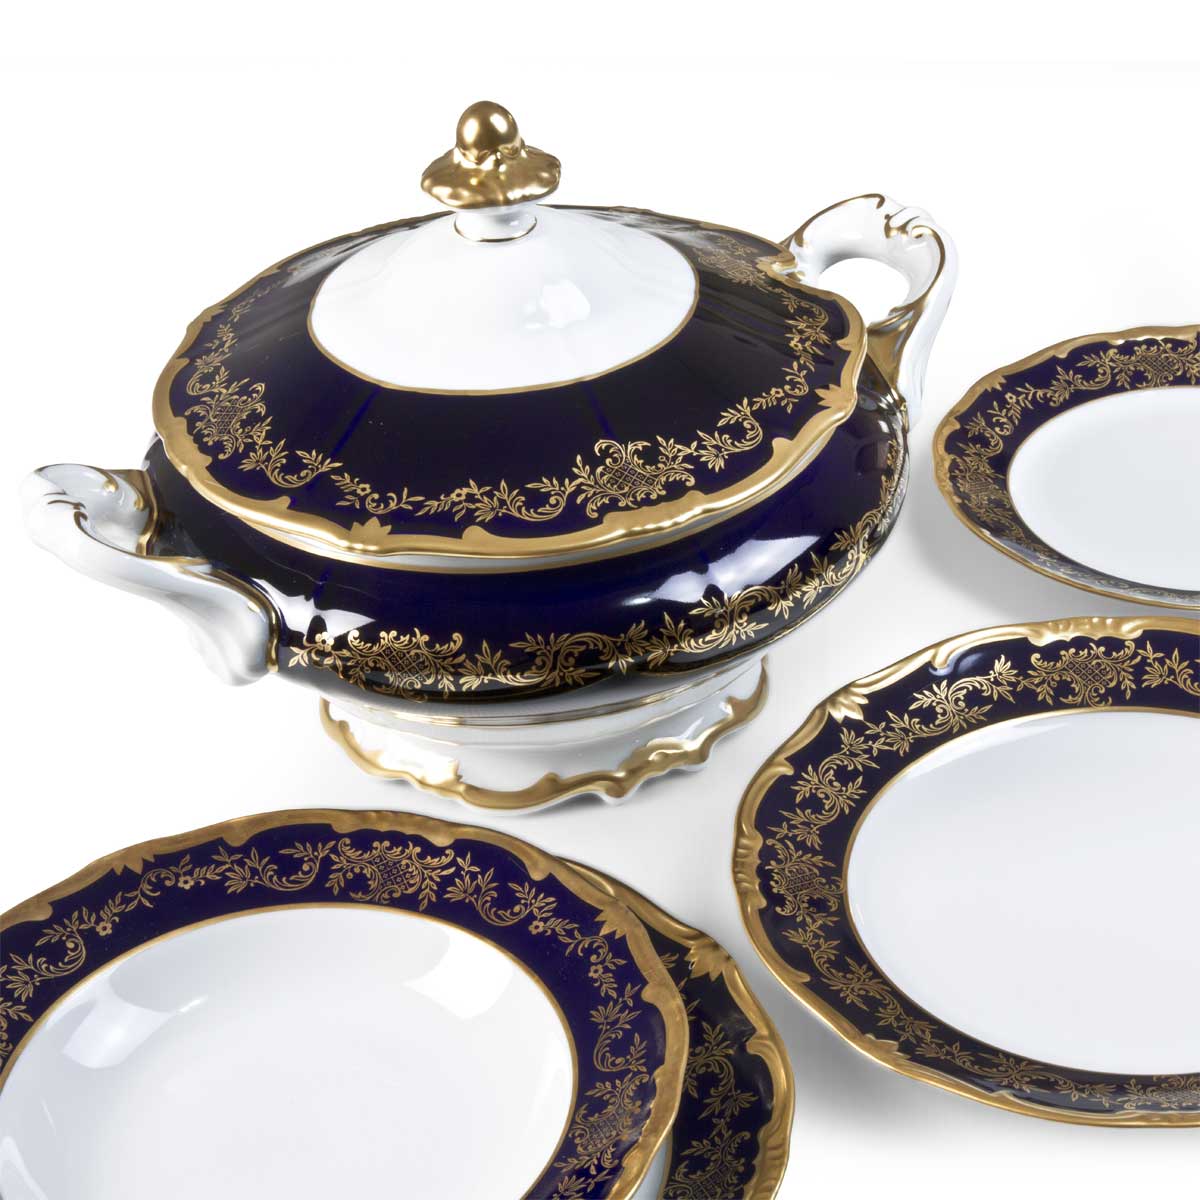 Servizio piatti da collezione interamente realizzato in Germania e dipinto a mano in oro e blu cobalto